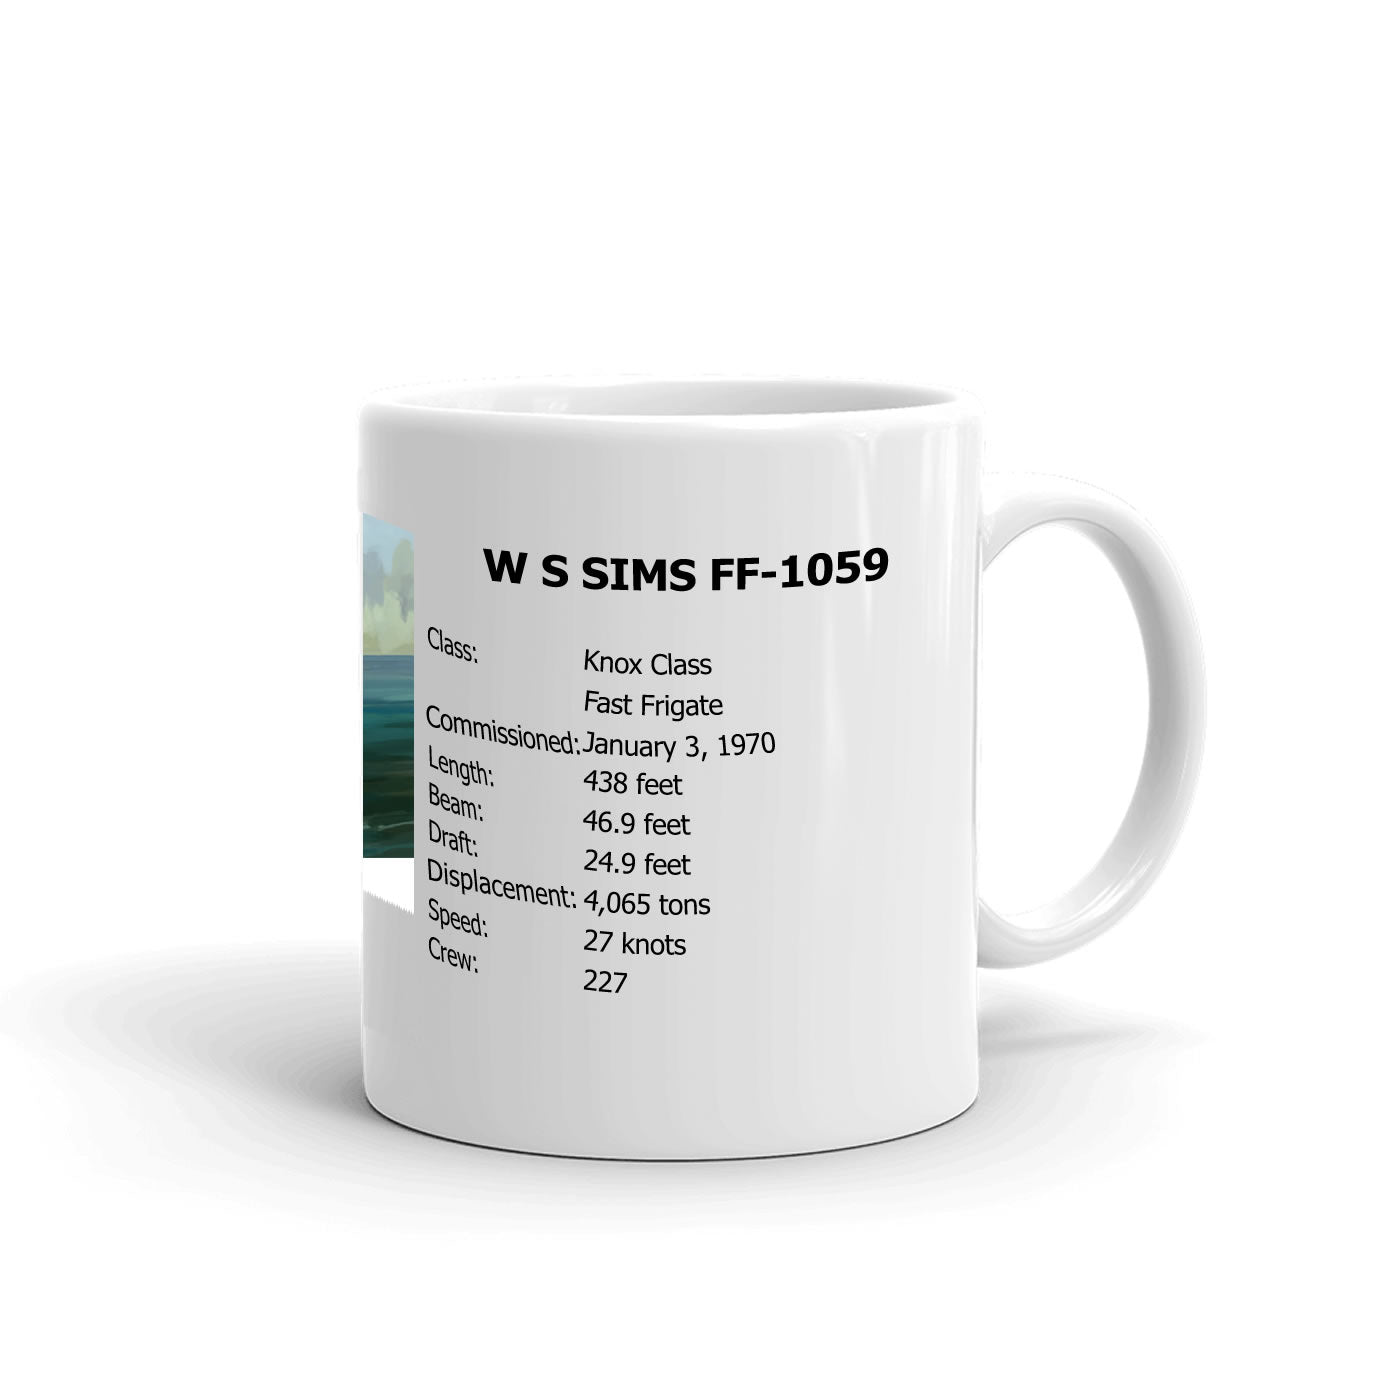 USS W S Sims FF-1059 Coffee Cup Mug